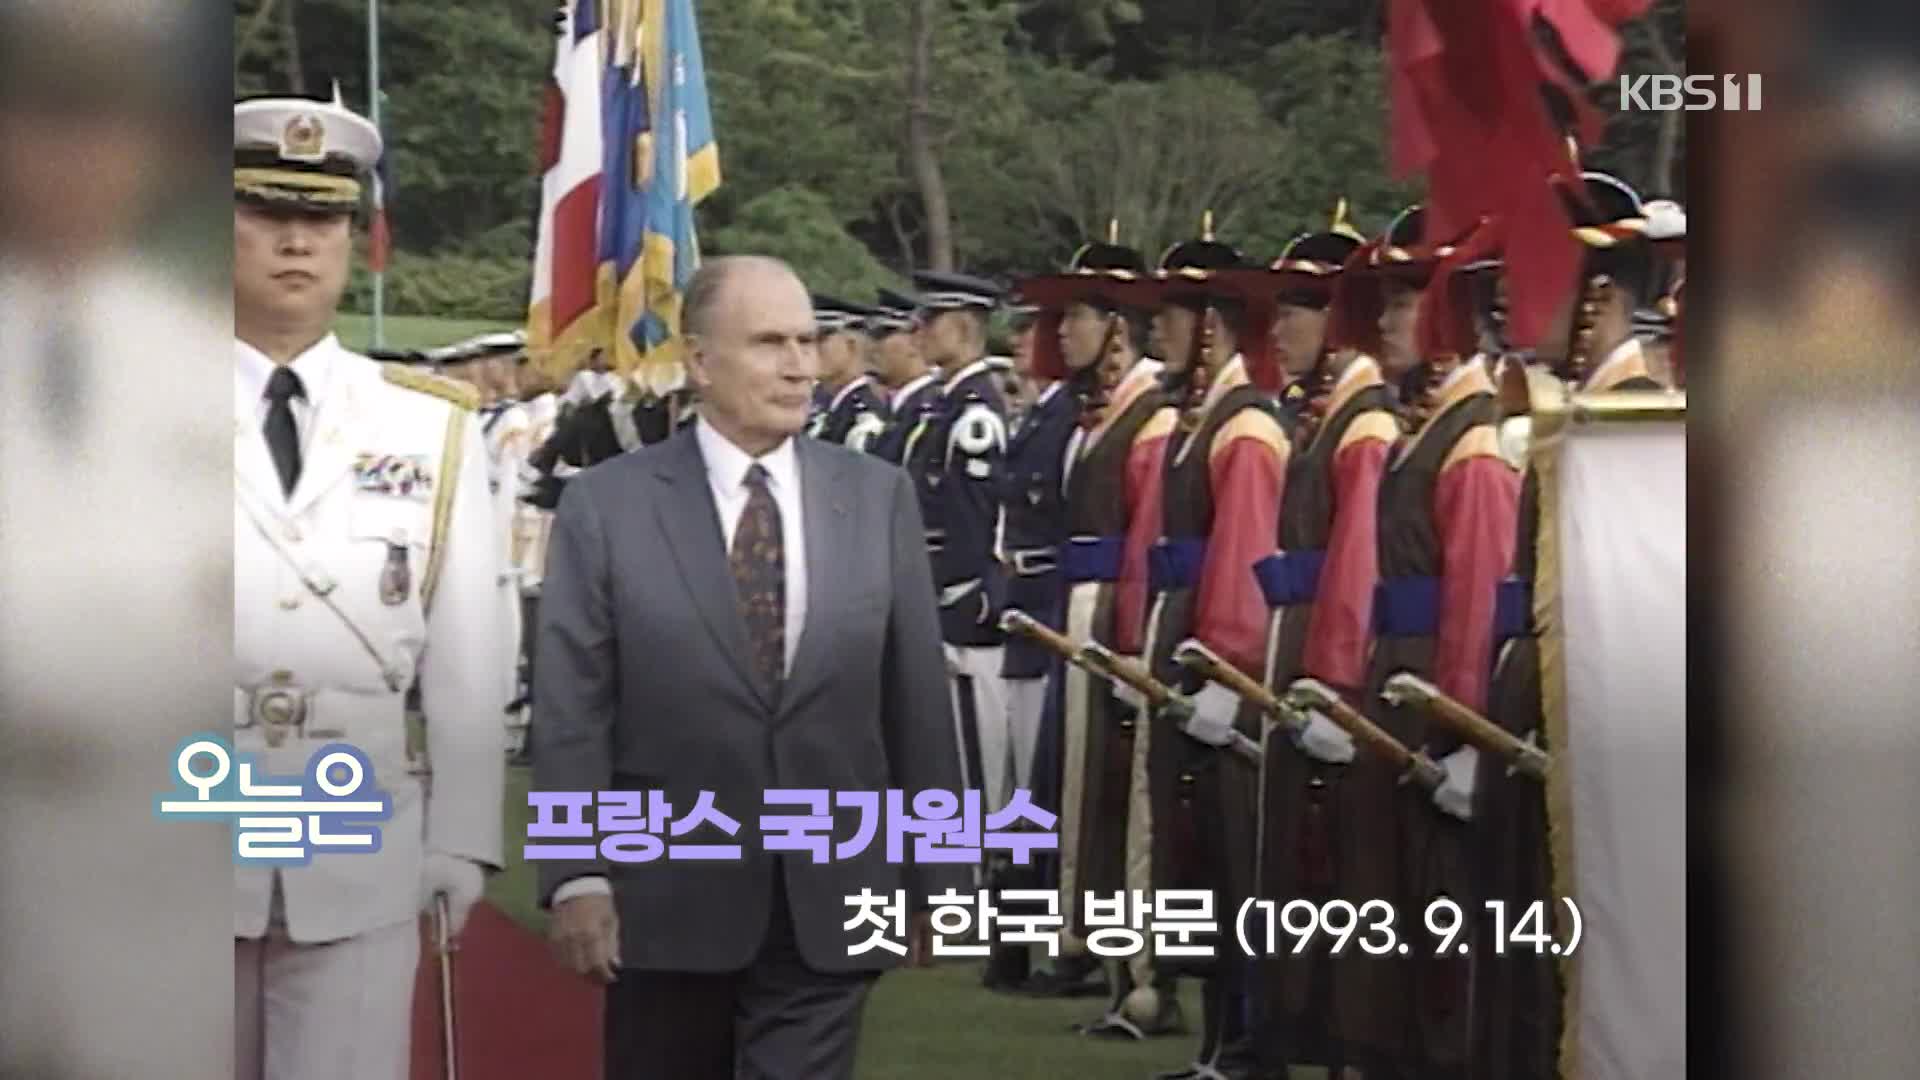 [오늘은] 프랑스 국가원수 첫 한국 방문(1993.9.14.)